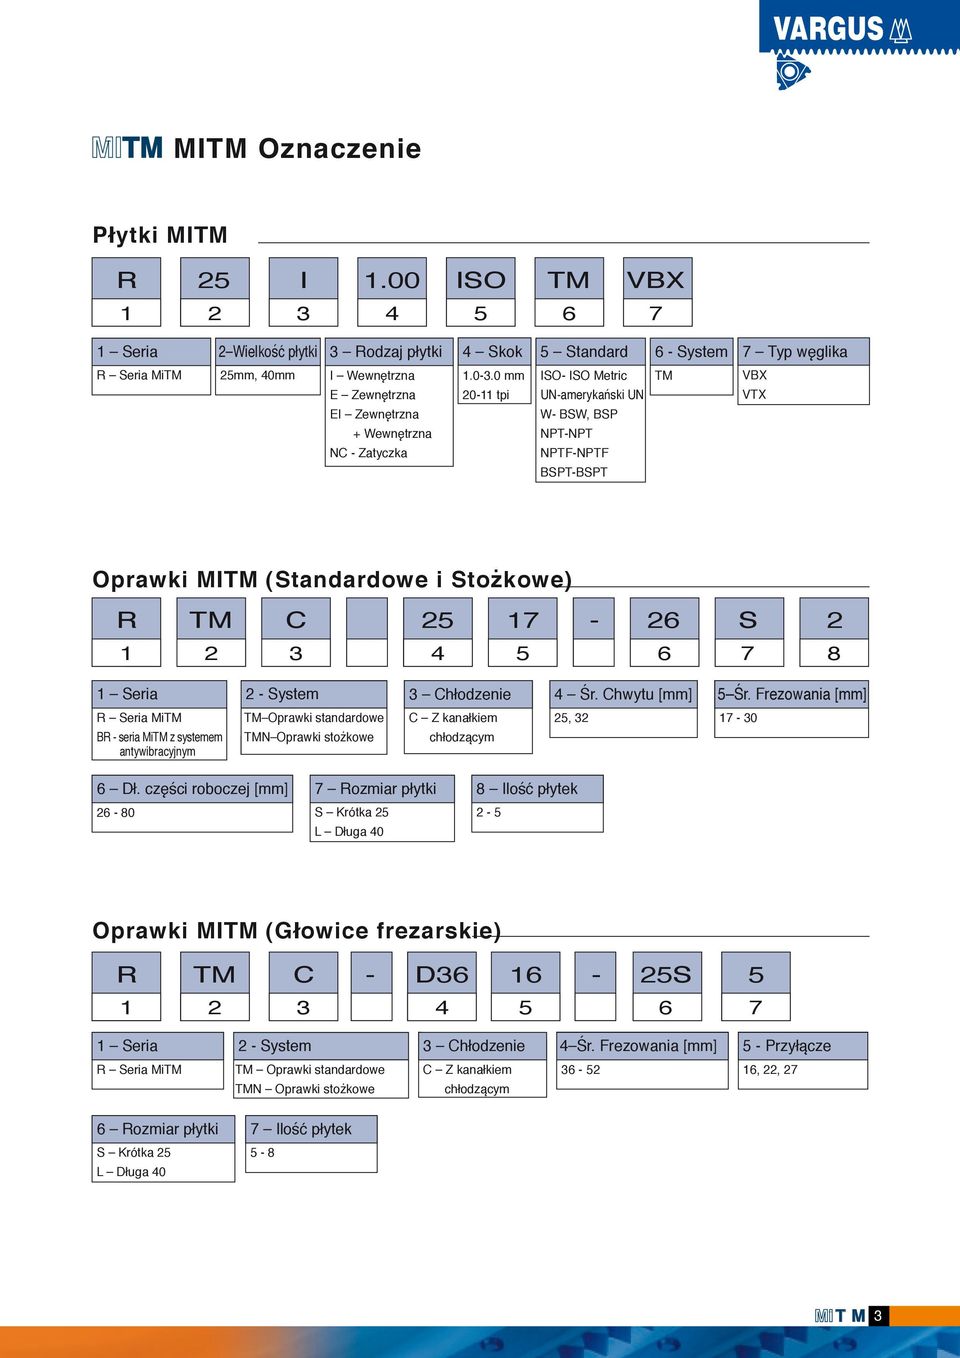 Chwytu [mm] Śr. Frezowania [mm] R Seria MiTM BR seria MiTM z systemem antywibracyjnym TM Oprawki standardowe TMN Oprawki stożkowe C Z kanałkiem chłodzącym, 0 Dł.